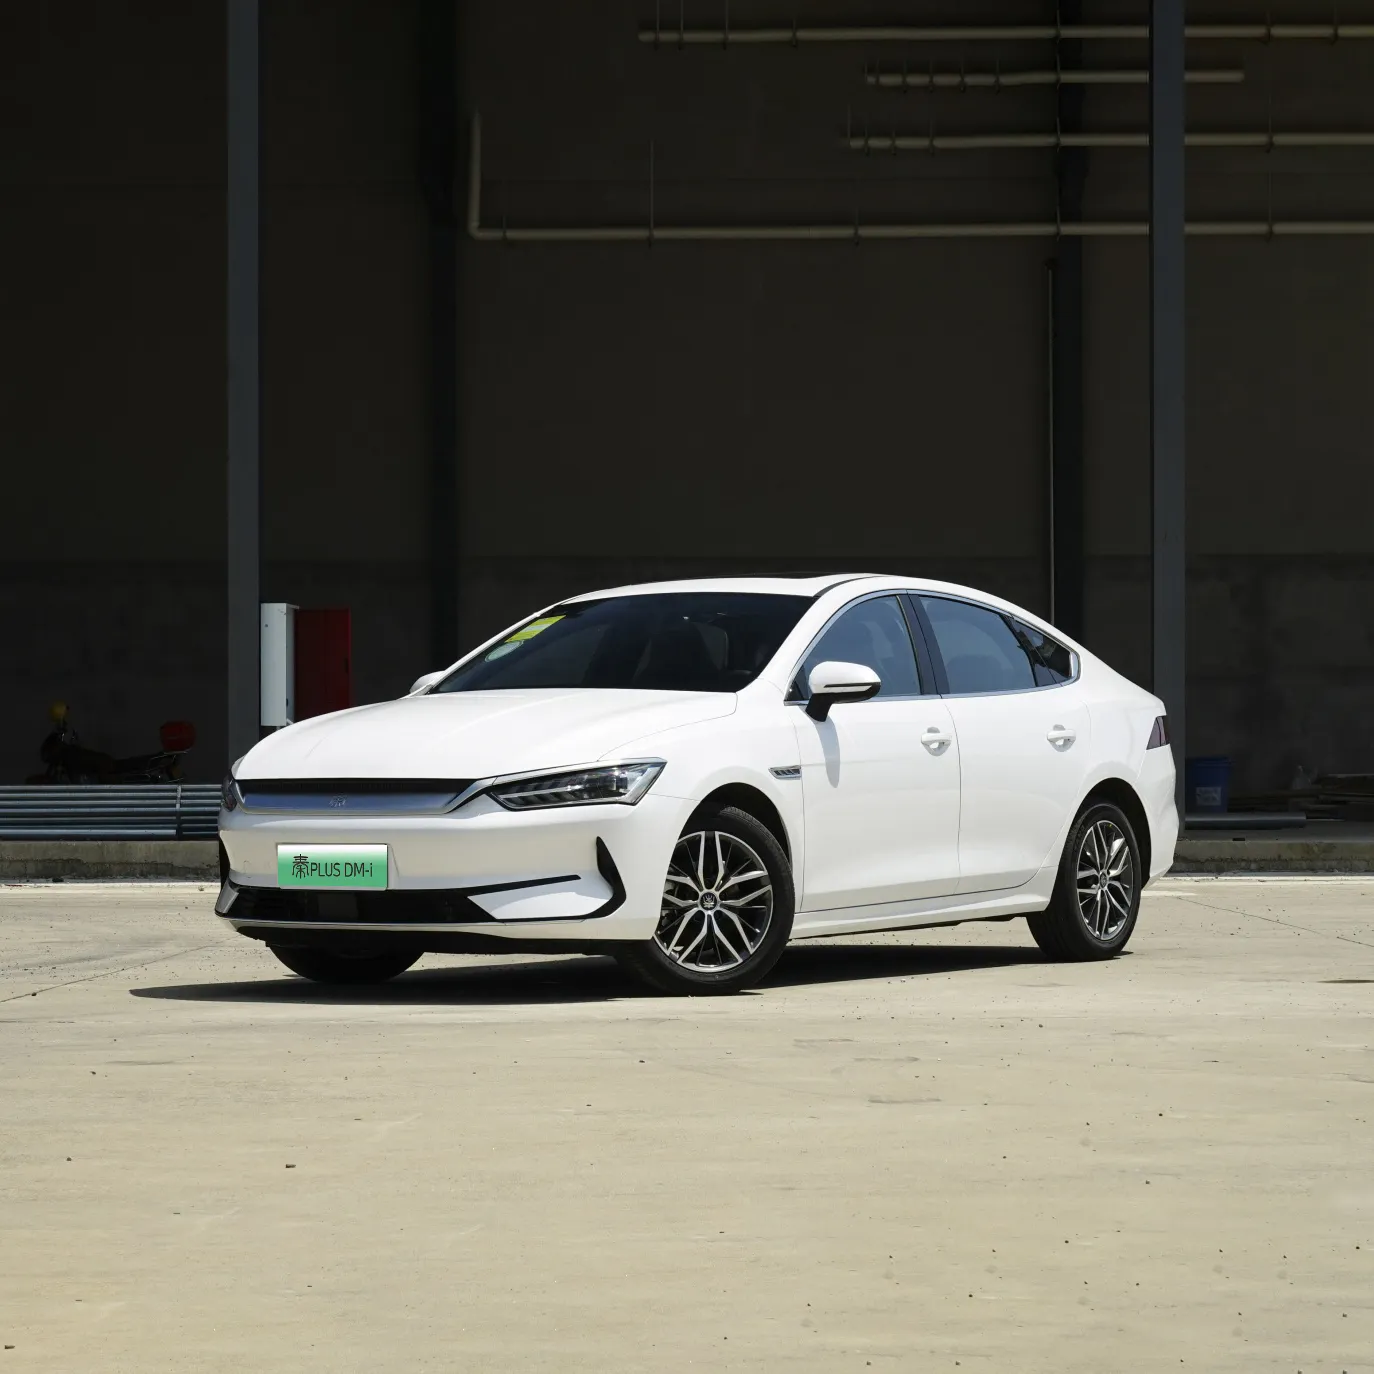 2022 недорогой автомобиль Secaond, новый китайский Электромобиль, роскошный большой дальний радиус действия, BYD Qin Plus